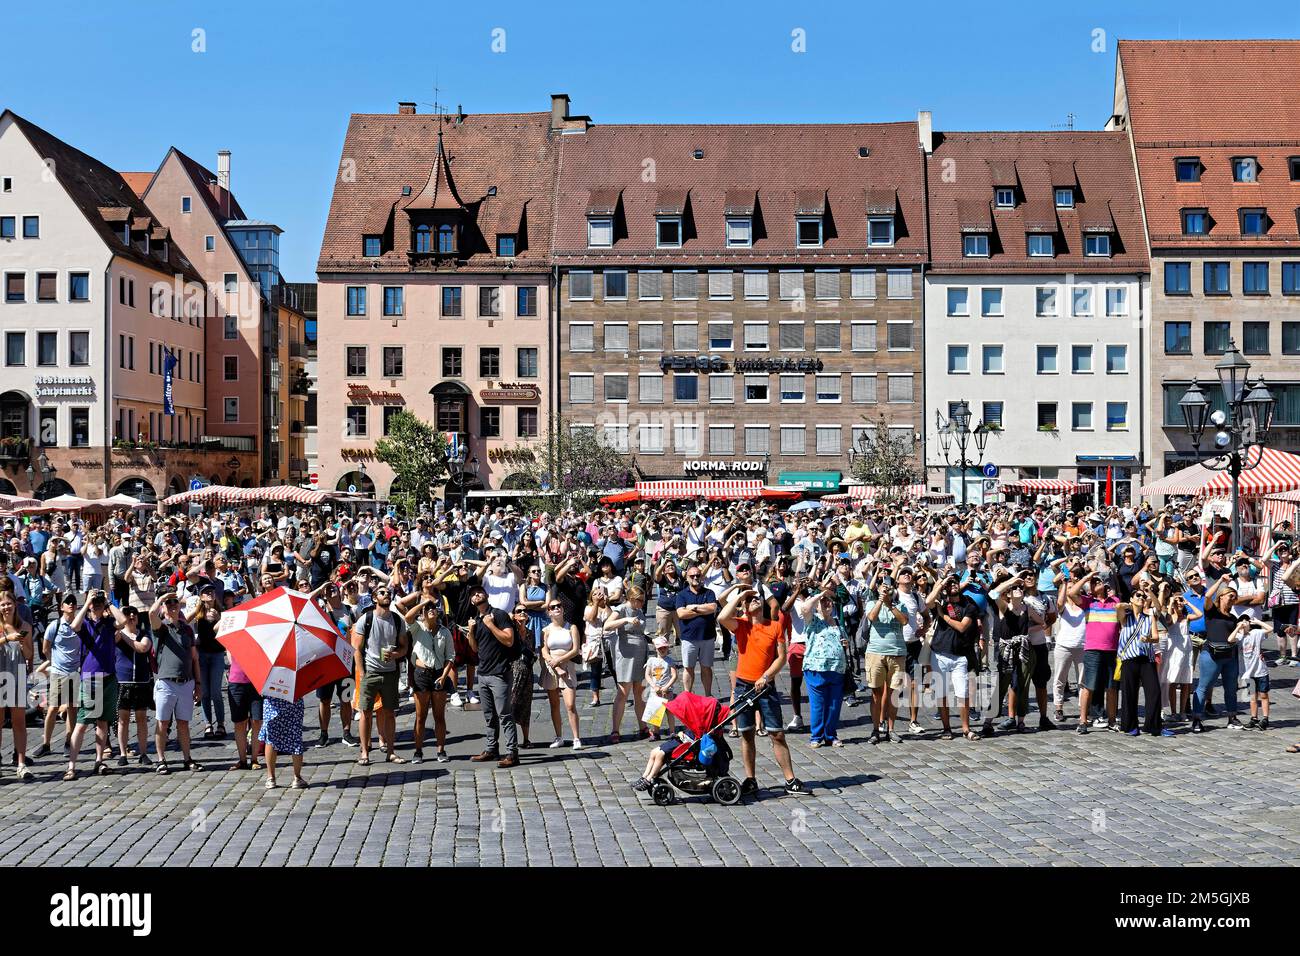 Grande foule regardant Maennleinlaufen à l'église de notre-Dame, aujourd'hui ville catholique romaine église paroissiale de notre-Dame, Hauptmarkt, Nuremberg, Moyen Banque D'Images